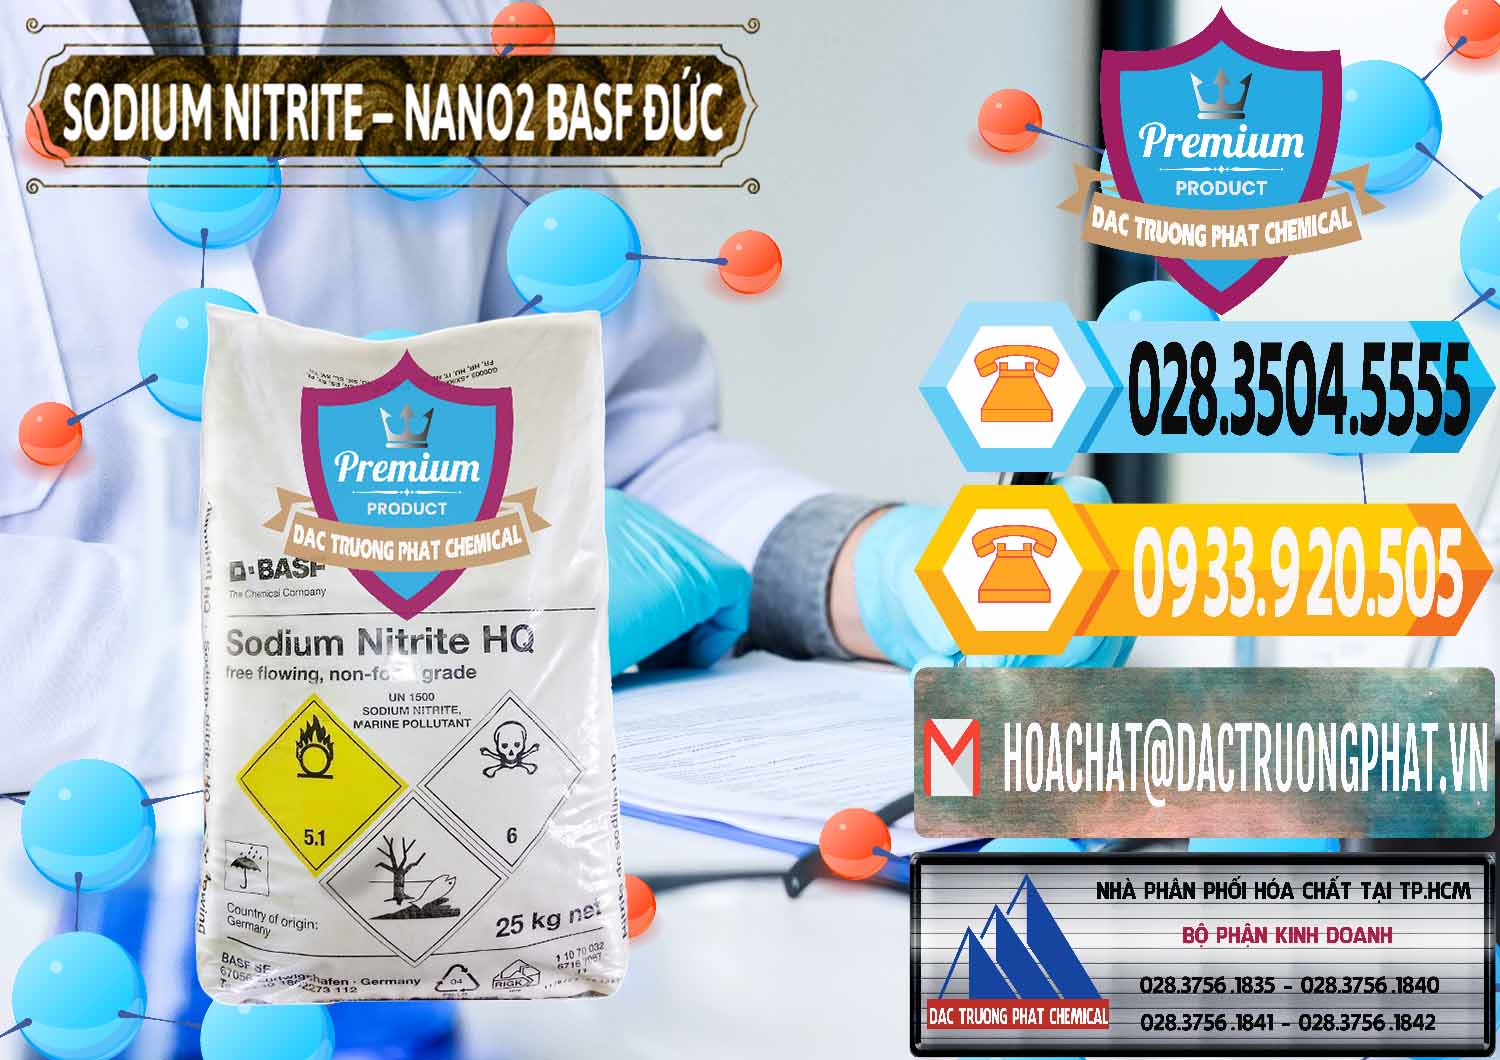 Công ty chuyên kinh doanh - bán Sodium Nitrite - NANO2 Đức BASF Germany - 0148 - Nơi chuyên cung cấp & nhập khẩu hóa chất tại TP.HCM - hoachattayrua.net